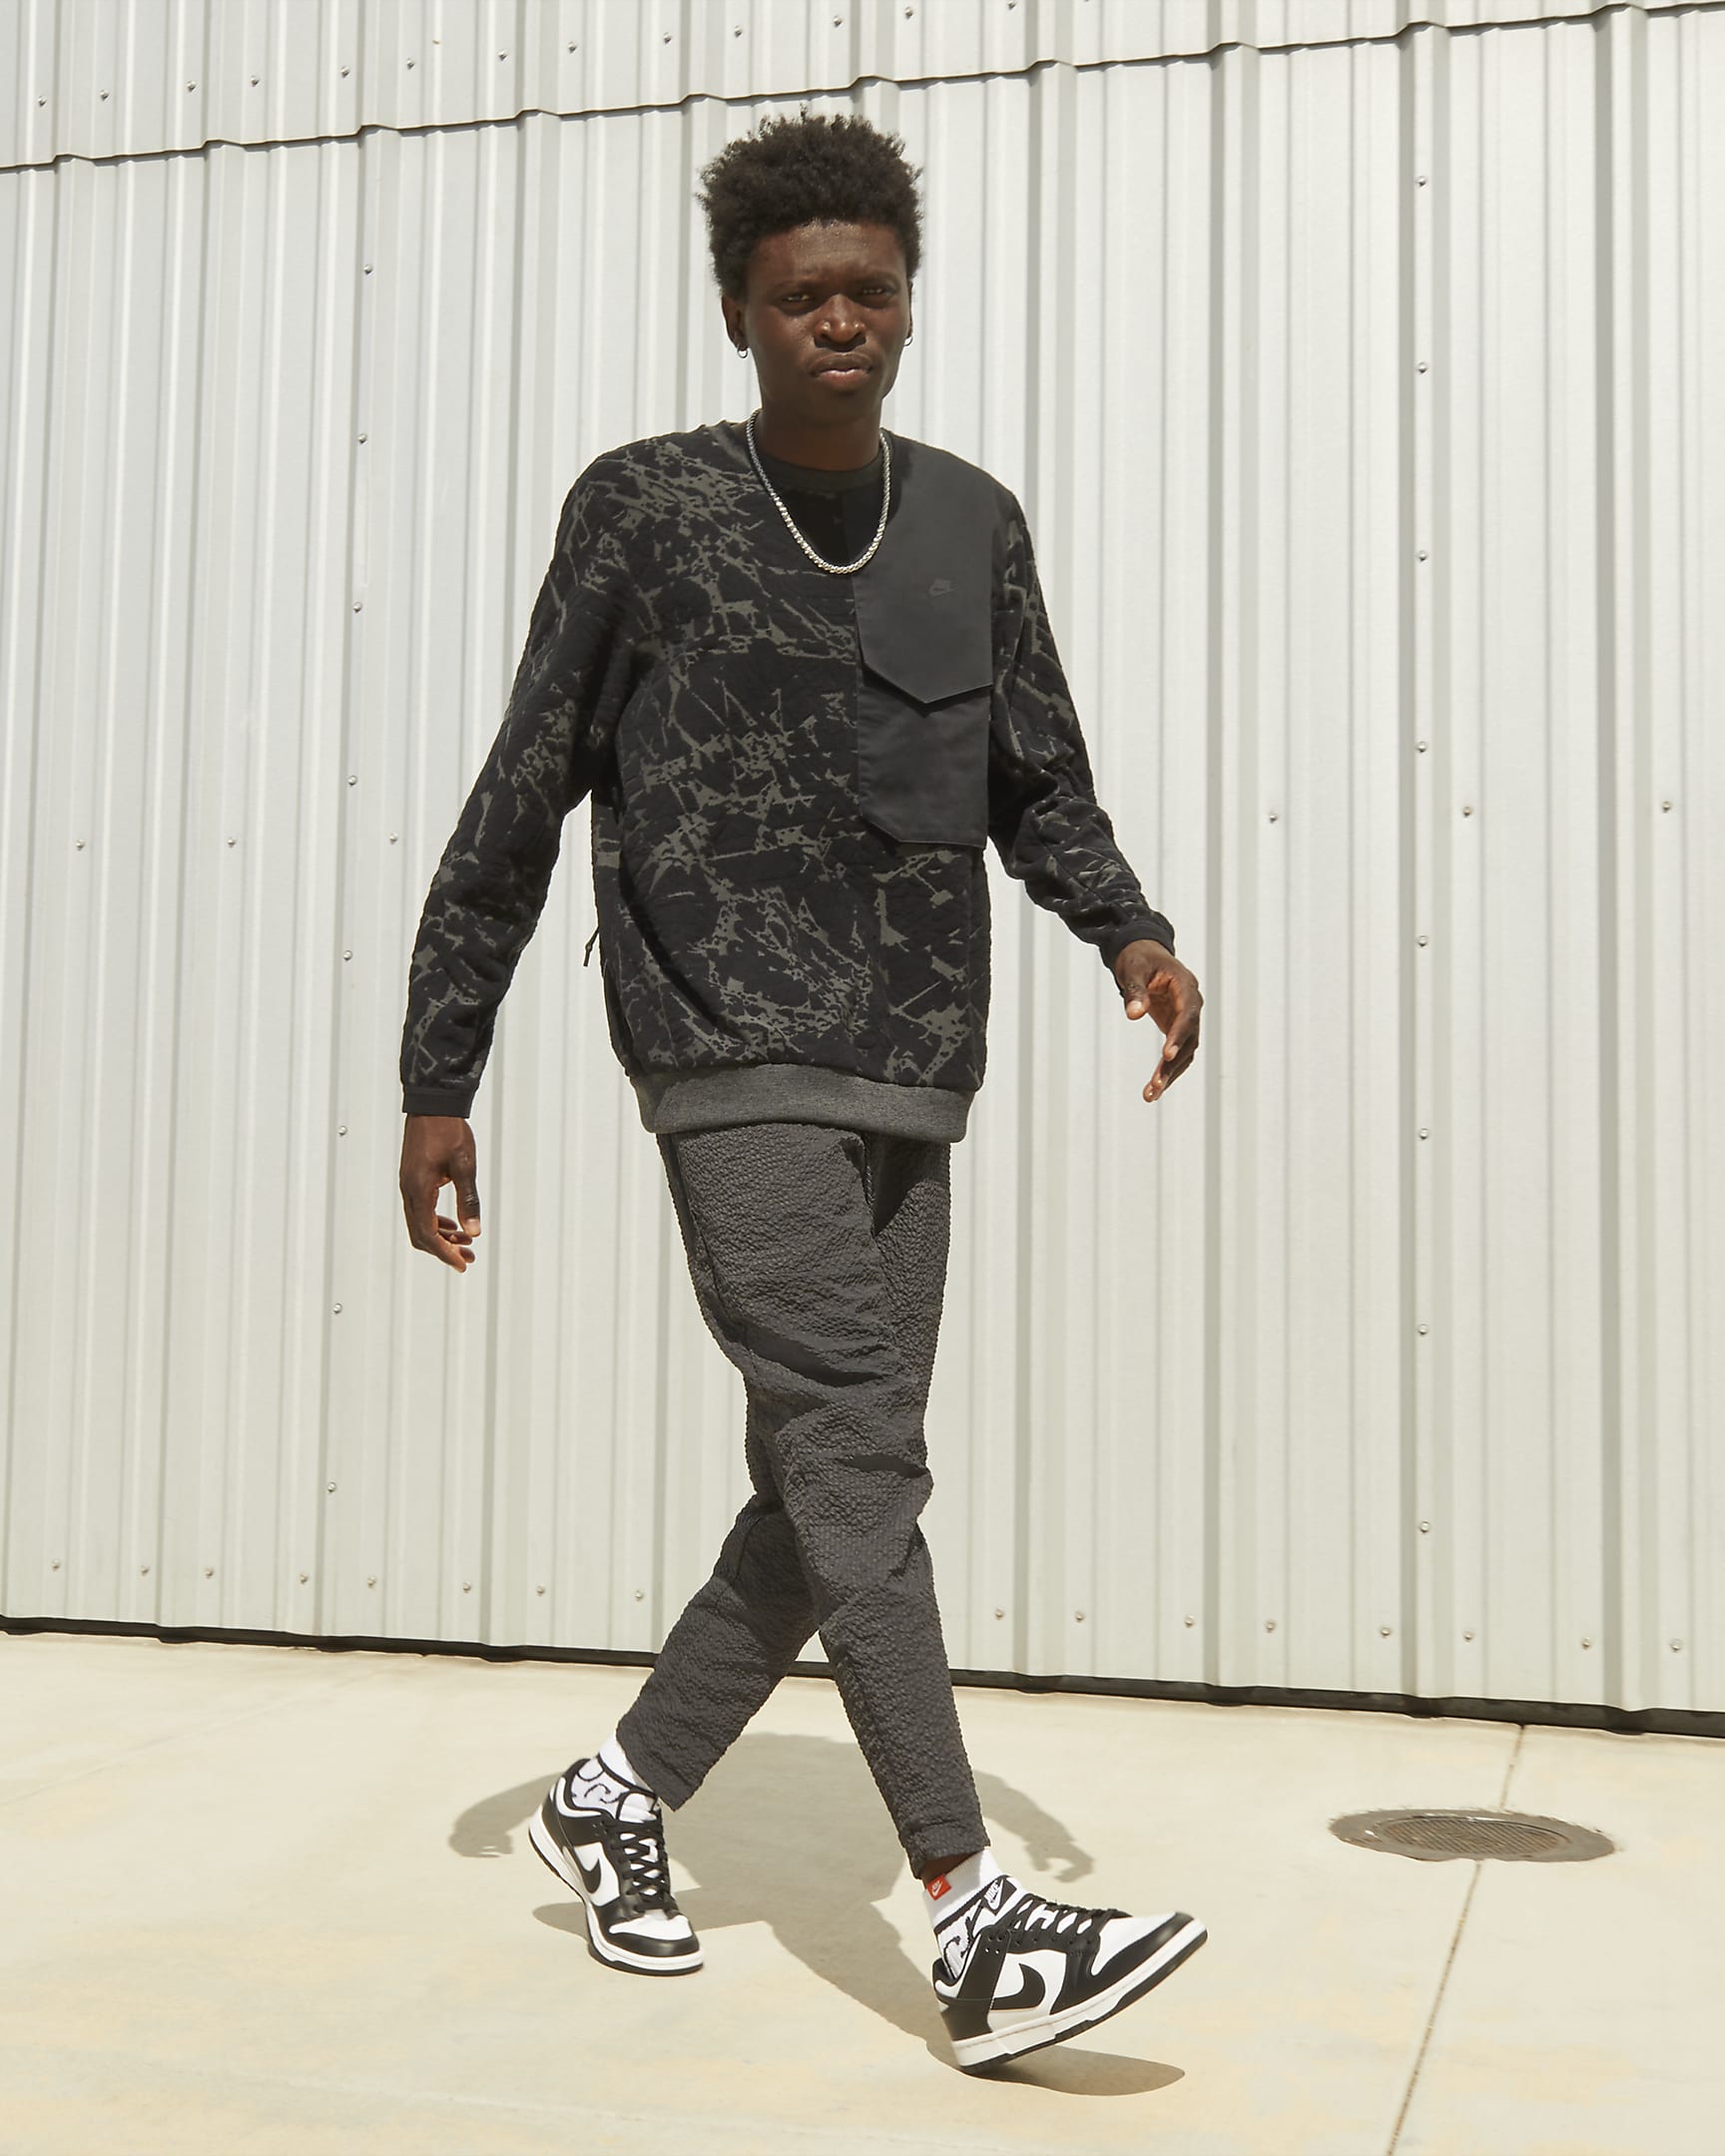 Chaussure Nike Dunk Low Retro pour Homme - Blanc/Blanc/Noir